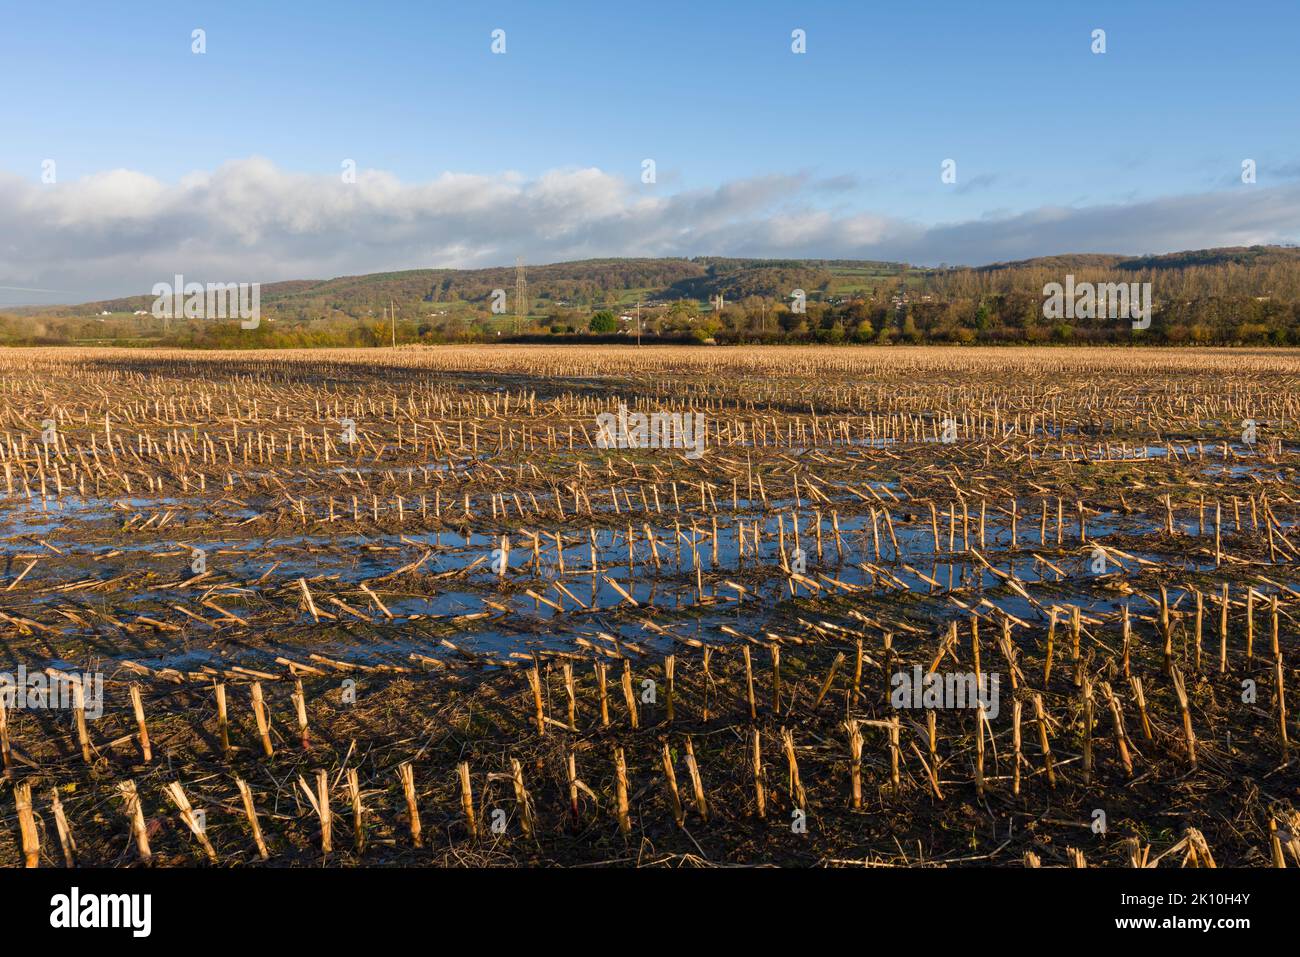 Un champ engorgé avec des poils de récolte laissés lors d'une récolte précédente à la fin de l'automne. Wrington, North Somerset, Angleterre. Banque D'Images